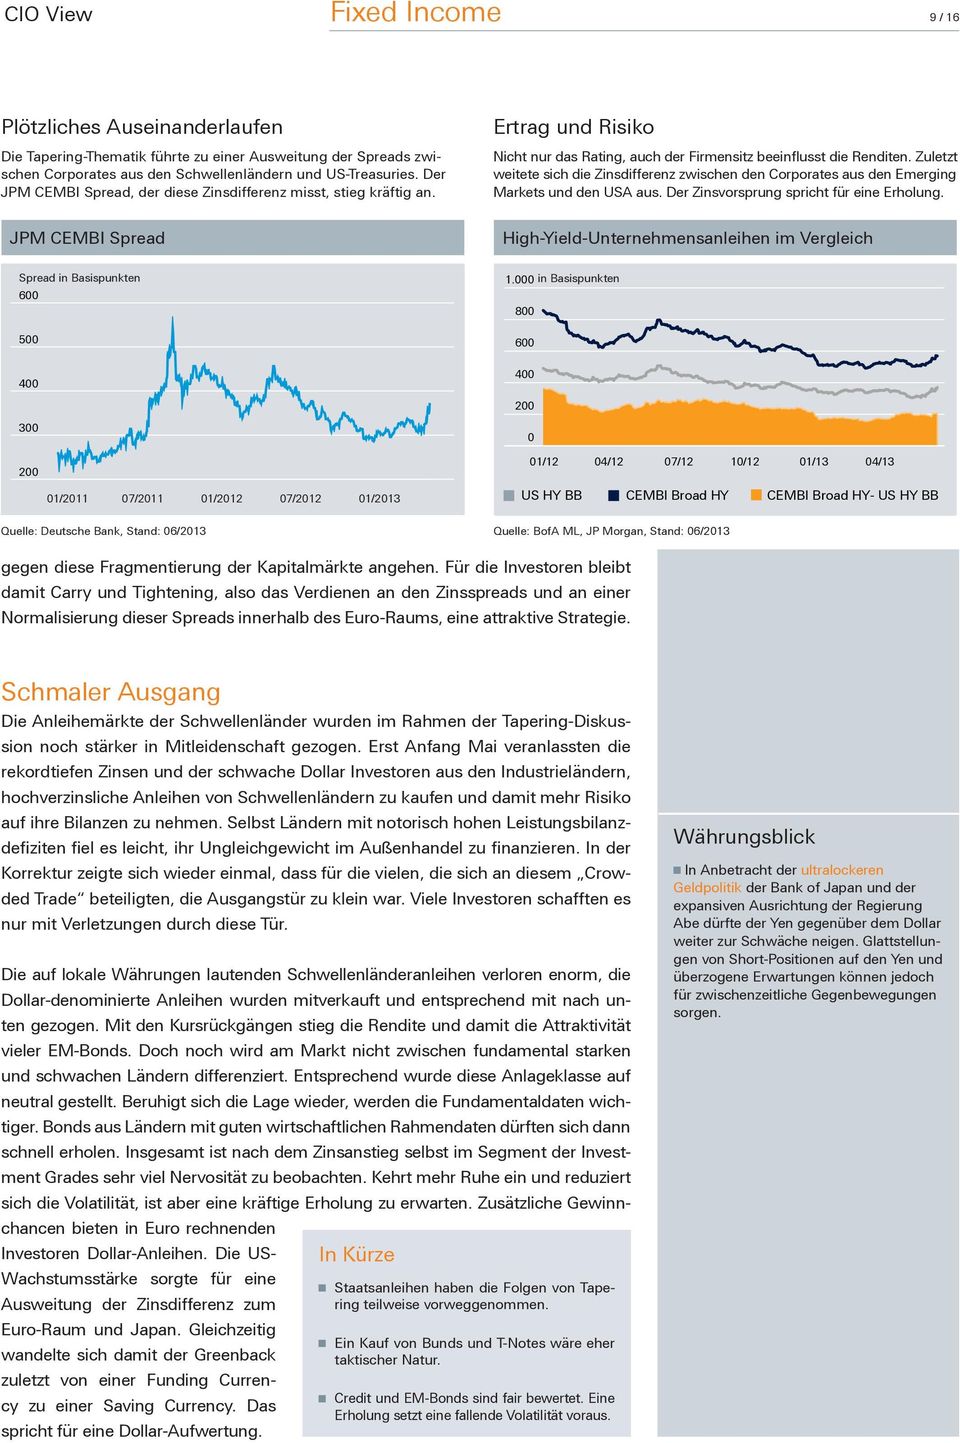 JPM CEMBI Spread Spread in Basispunkten 6 5 4 3 2 Spain Greece Portugal 1/211 7/211 1/212 7/212 1/213 Quelle: Deutsche Bank, Stand: 6/213 Ertrag und Risiko Nicht nur das Rating, auch der Firmensitz